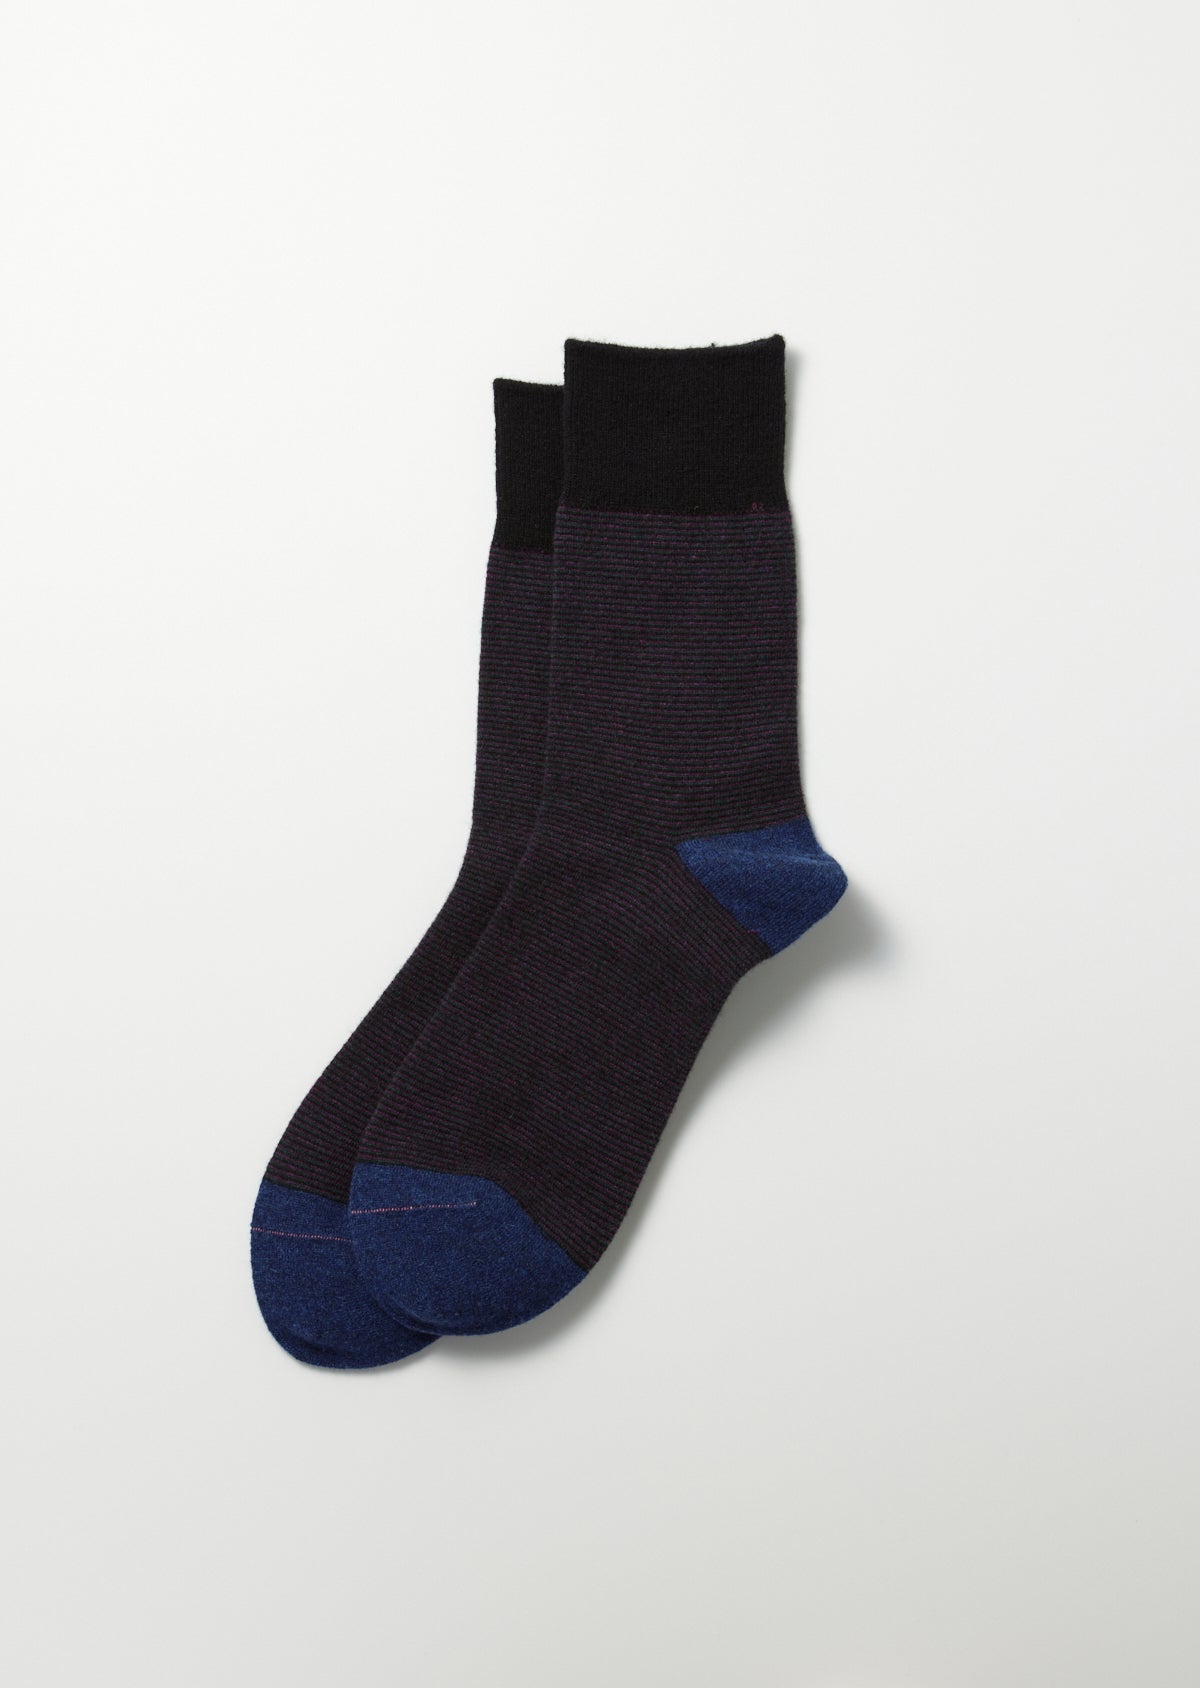 Retro Socken schwarz/d.blau